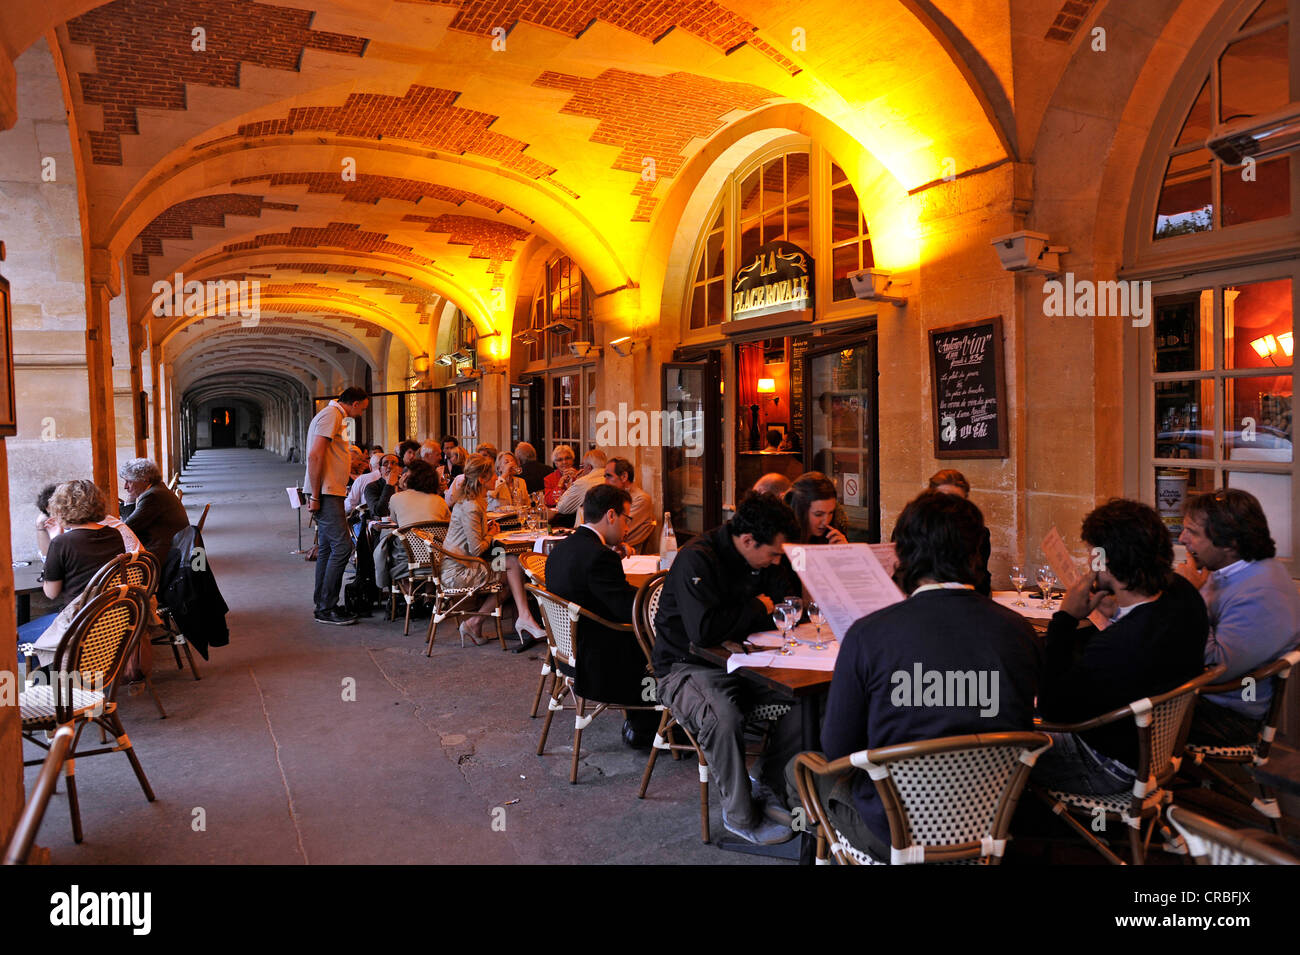 Restaurant Place Royale in the arcades of the Place des Vosges, Jewish quarter of Le Marais, Village St Paul, Paris, France Stock Photo